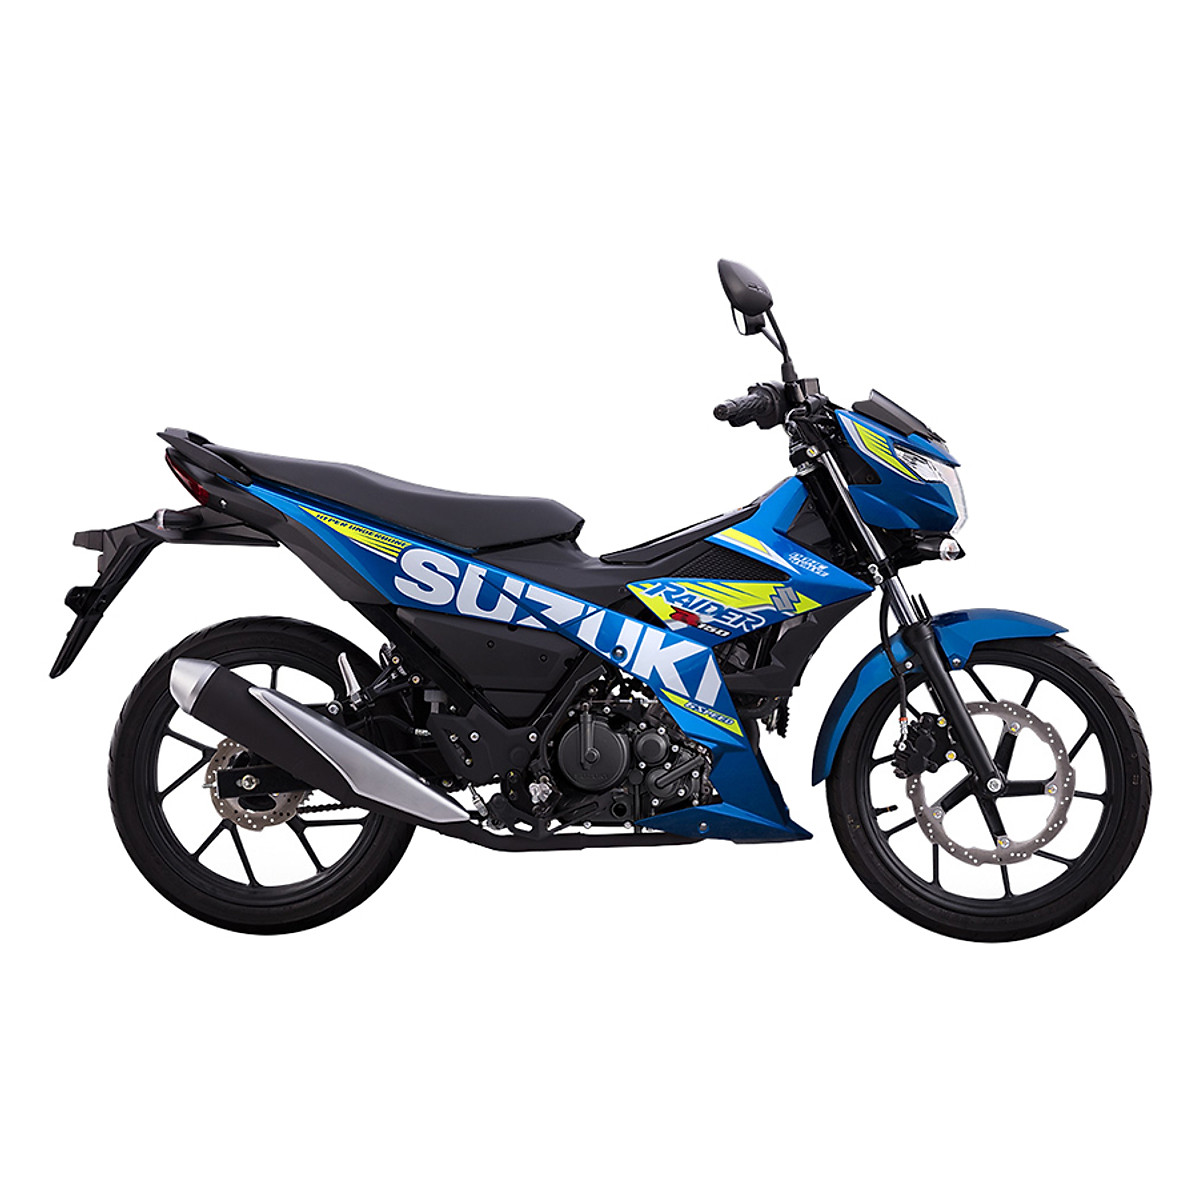 Raider R150  Suzuki Motorcycles Philippines